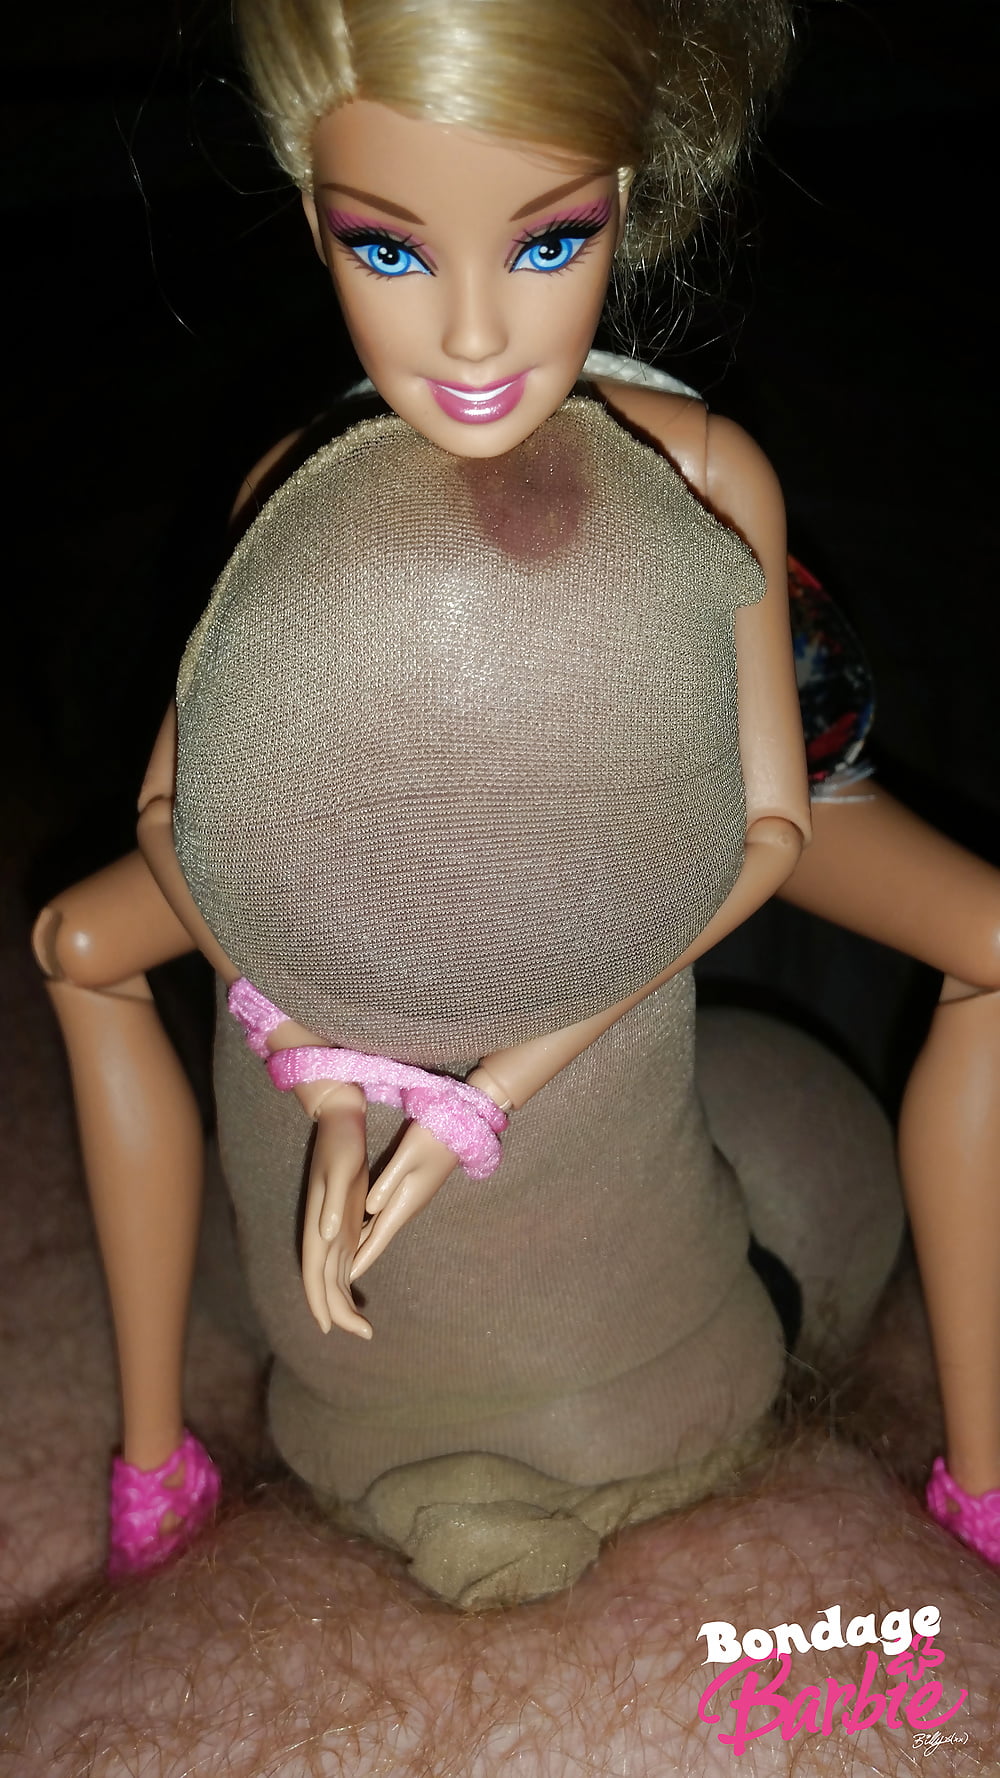 Bondage Barbie 01 - Photo #25.